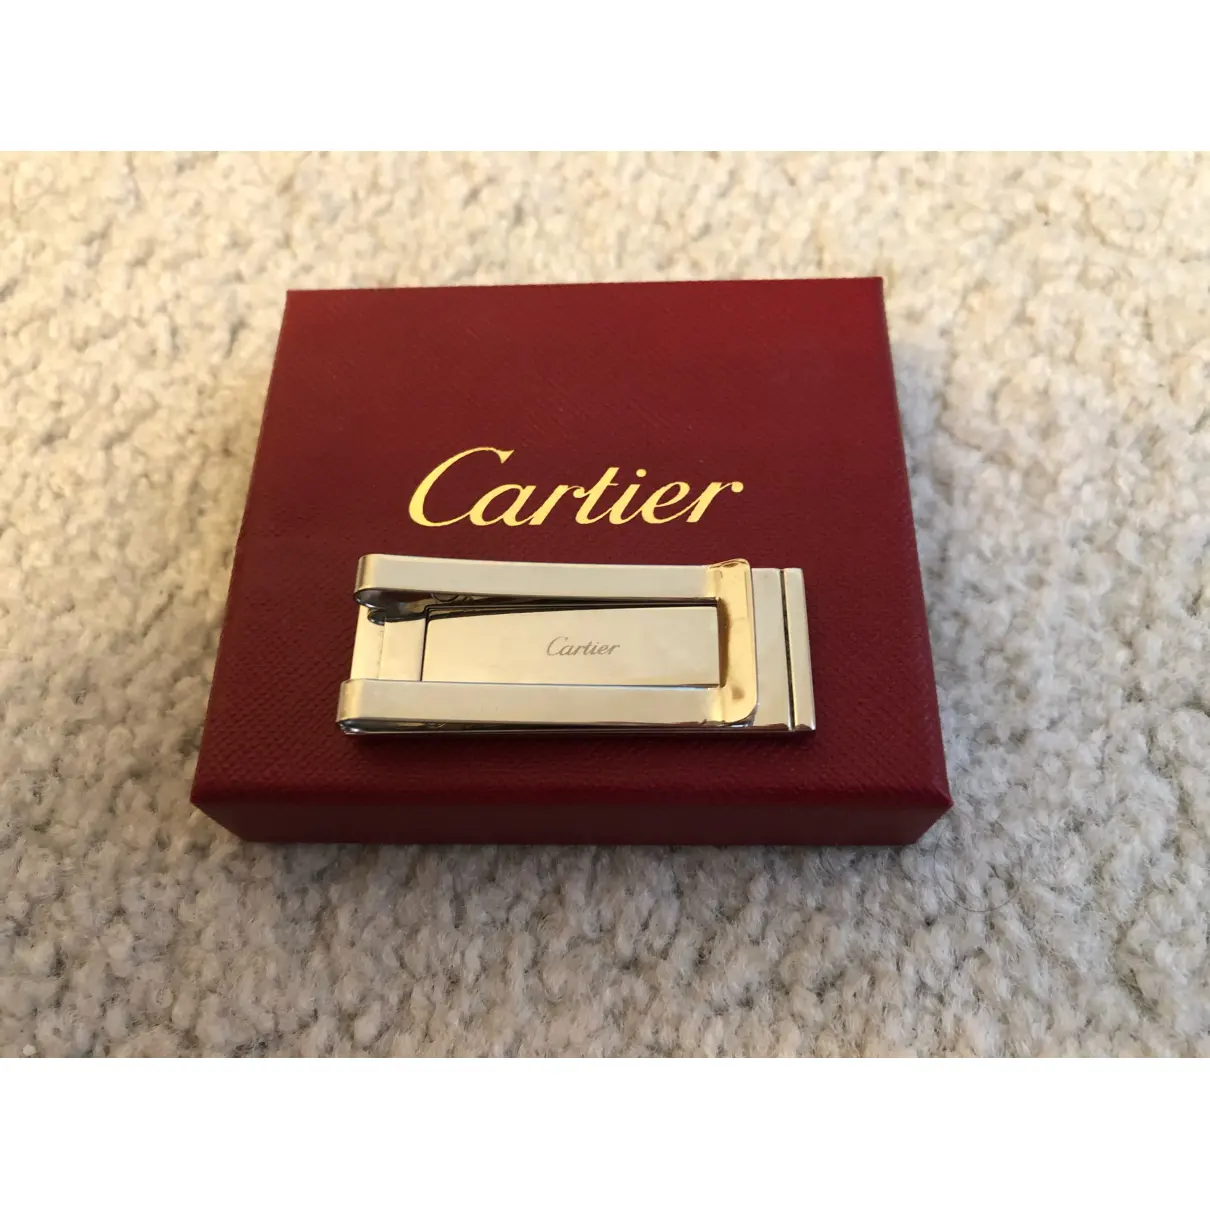 Buy Cartier Jewellery online